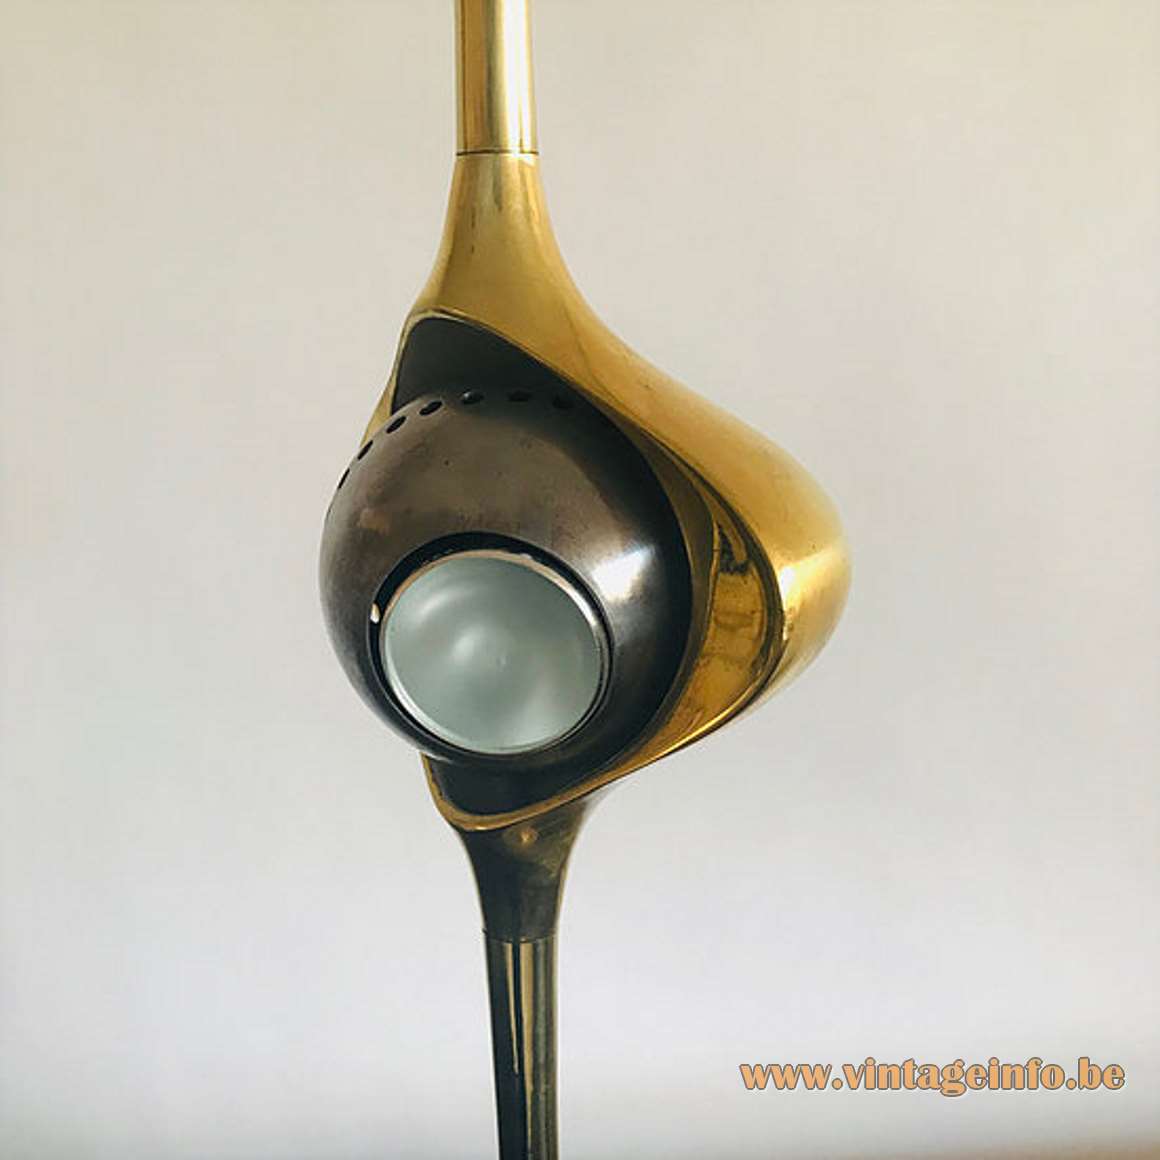 Angello Lelii Cobra table lamp white brass base long rod magnetised globe Lelli design 1960s Arredoluce 